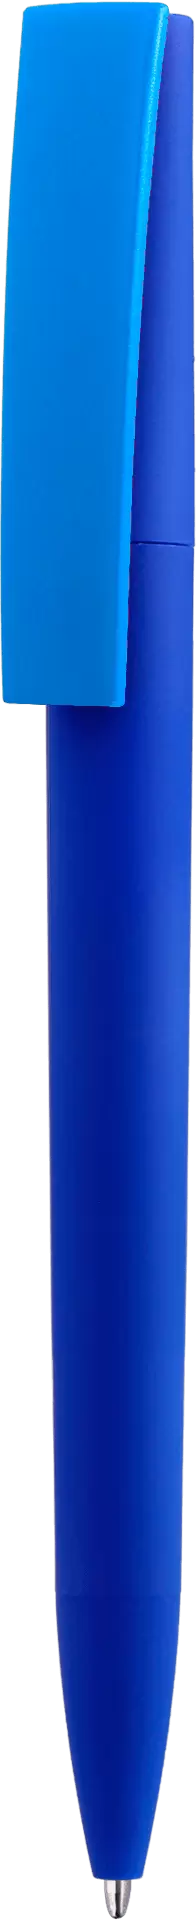 Ручка ZETA SOFT MIX Синяя с голубым 1024.01.12